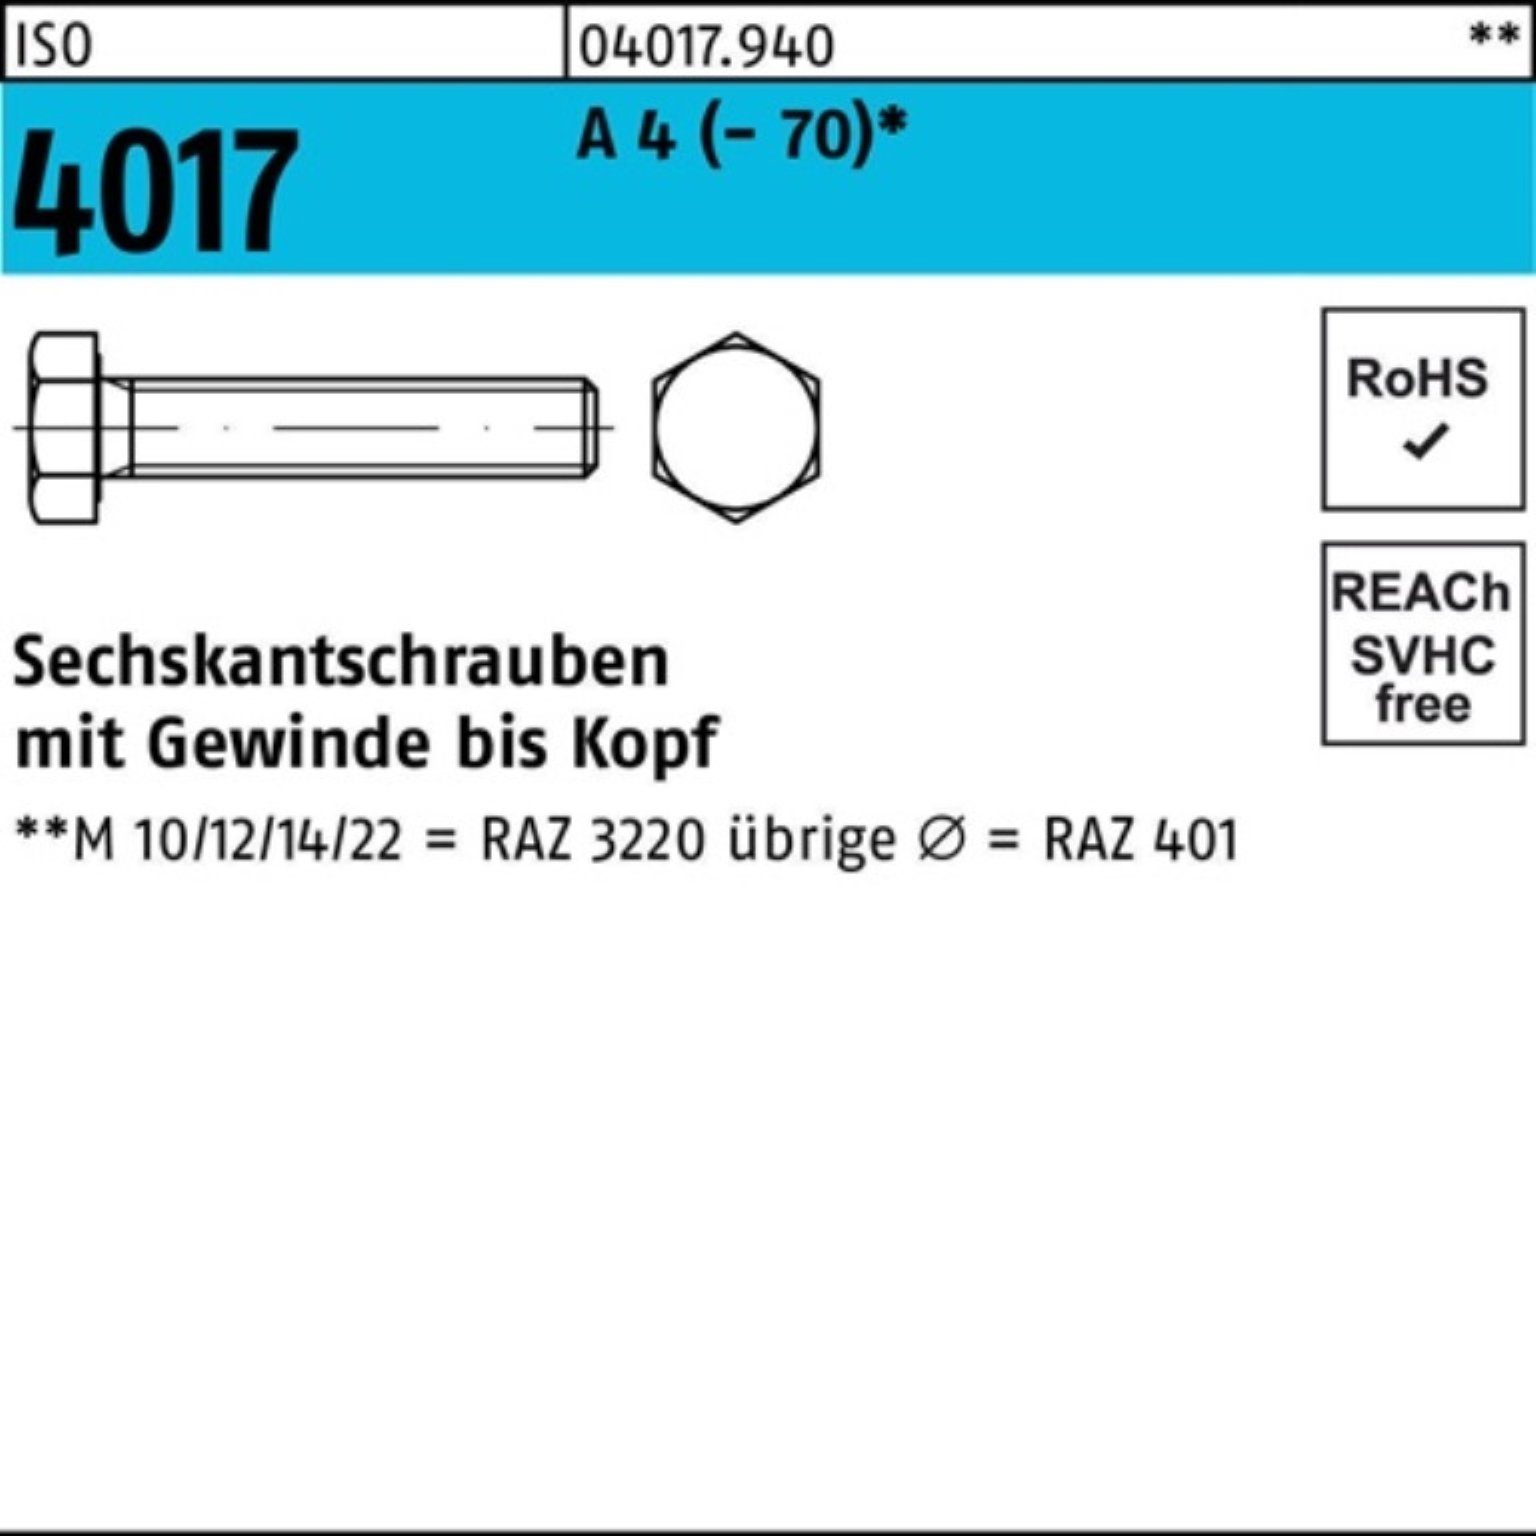 Bufab Sechskantschraube 100er Pack Sechskantschraube ISO 4017 VG M22x 40 A 4 (70) 1 Stück I